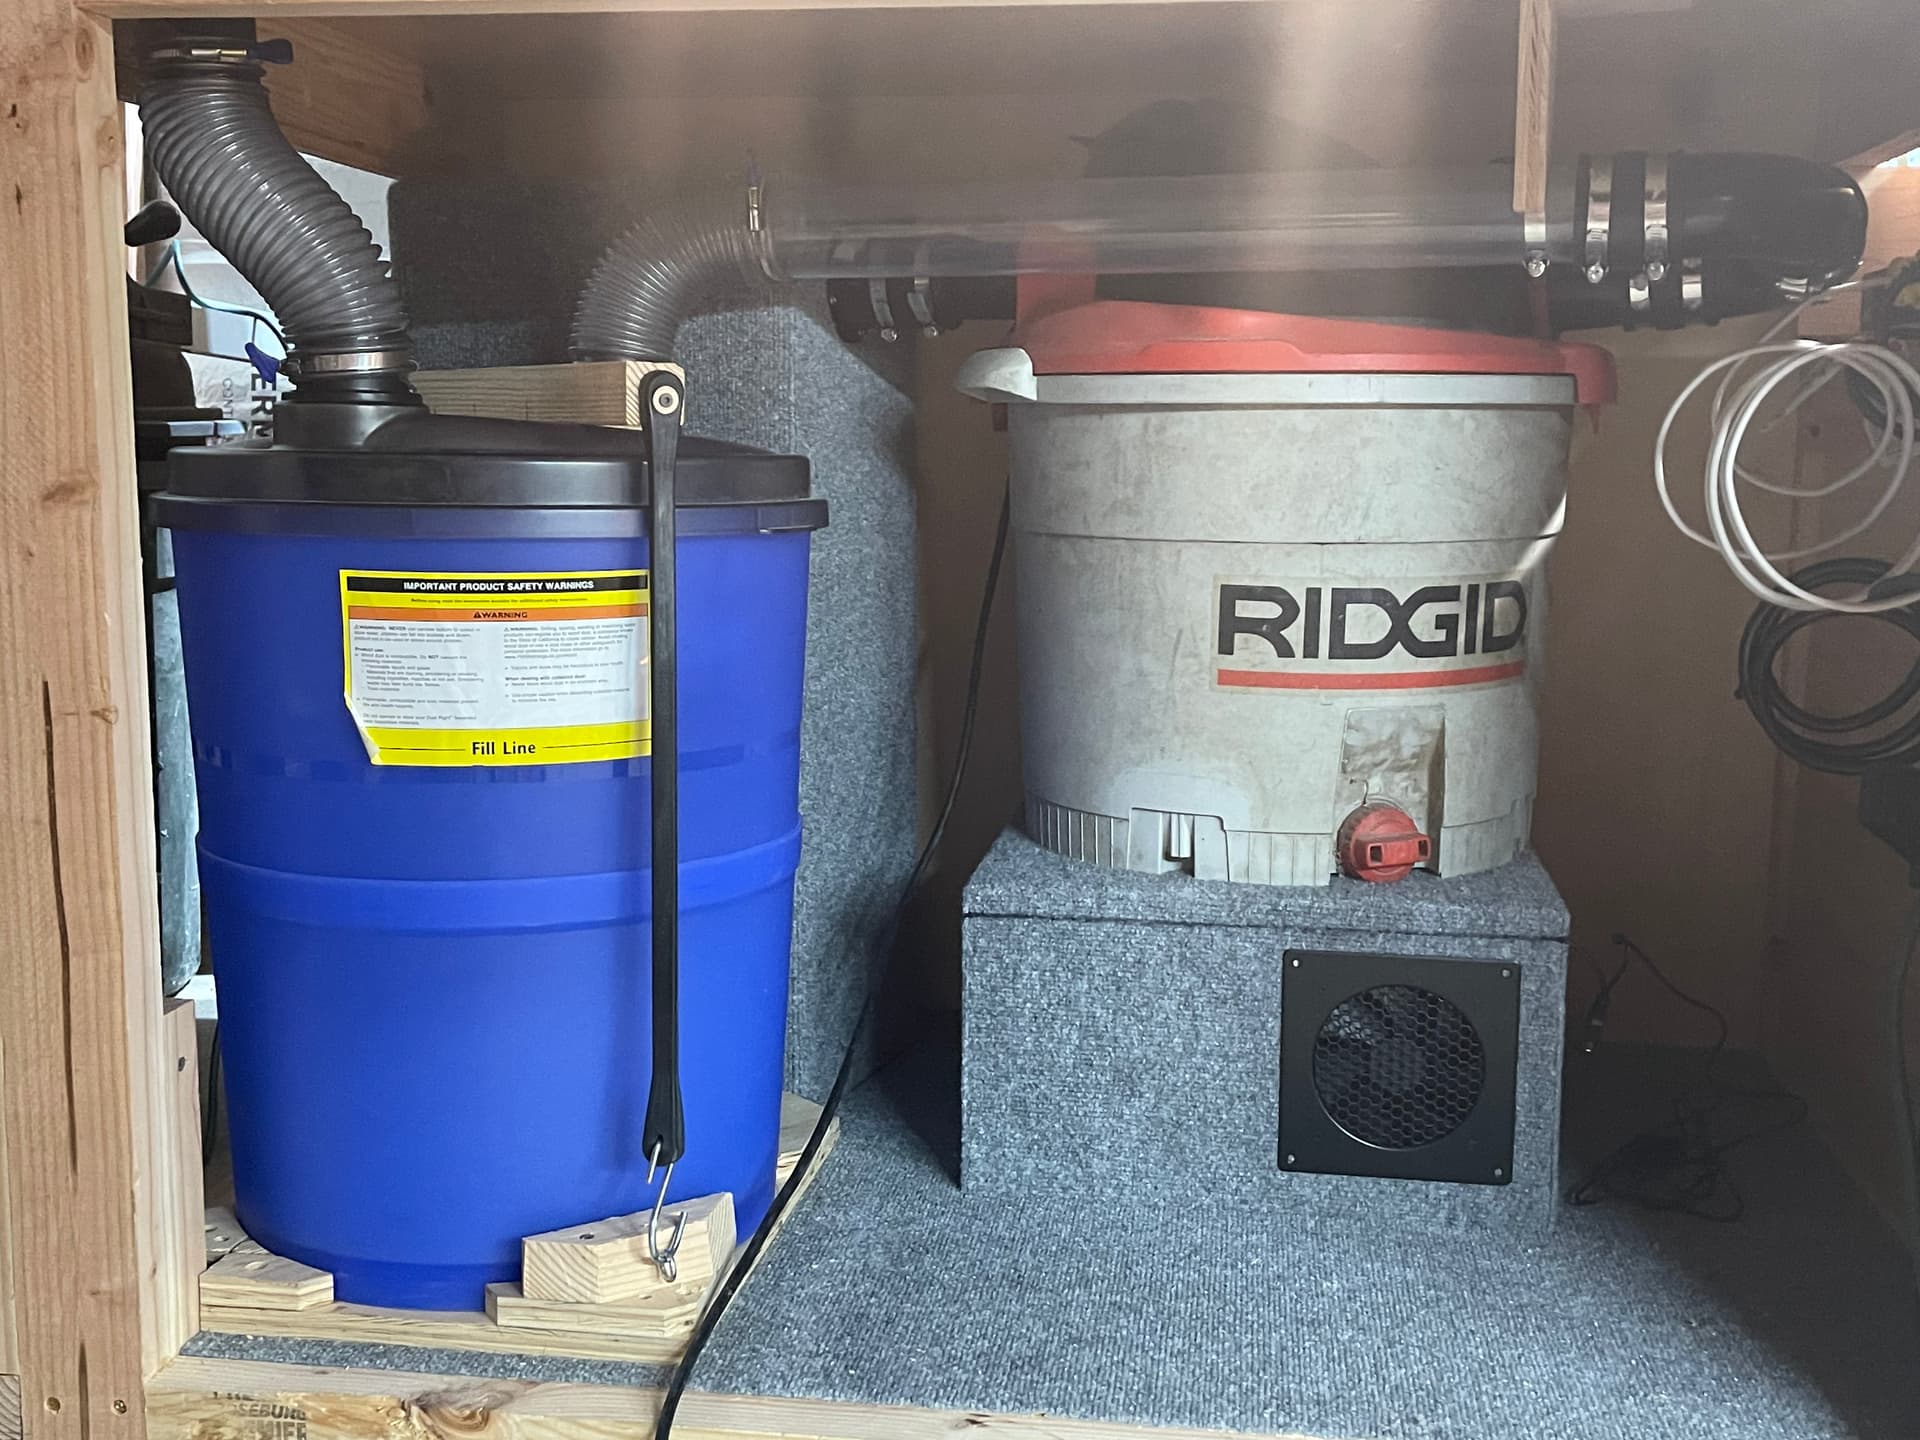 RIDGID WD0670 Wet/Dry Vac 